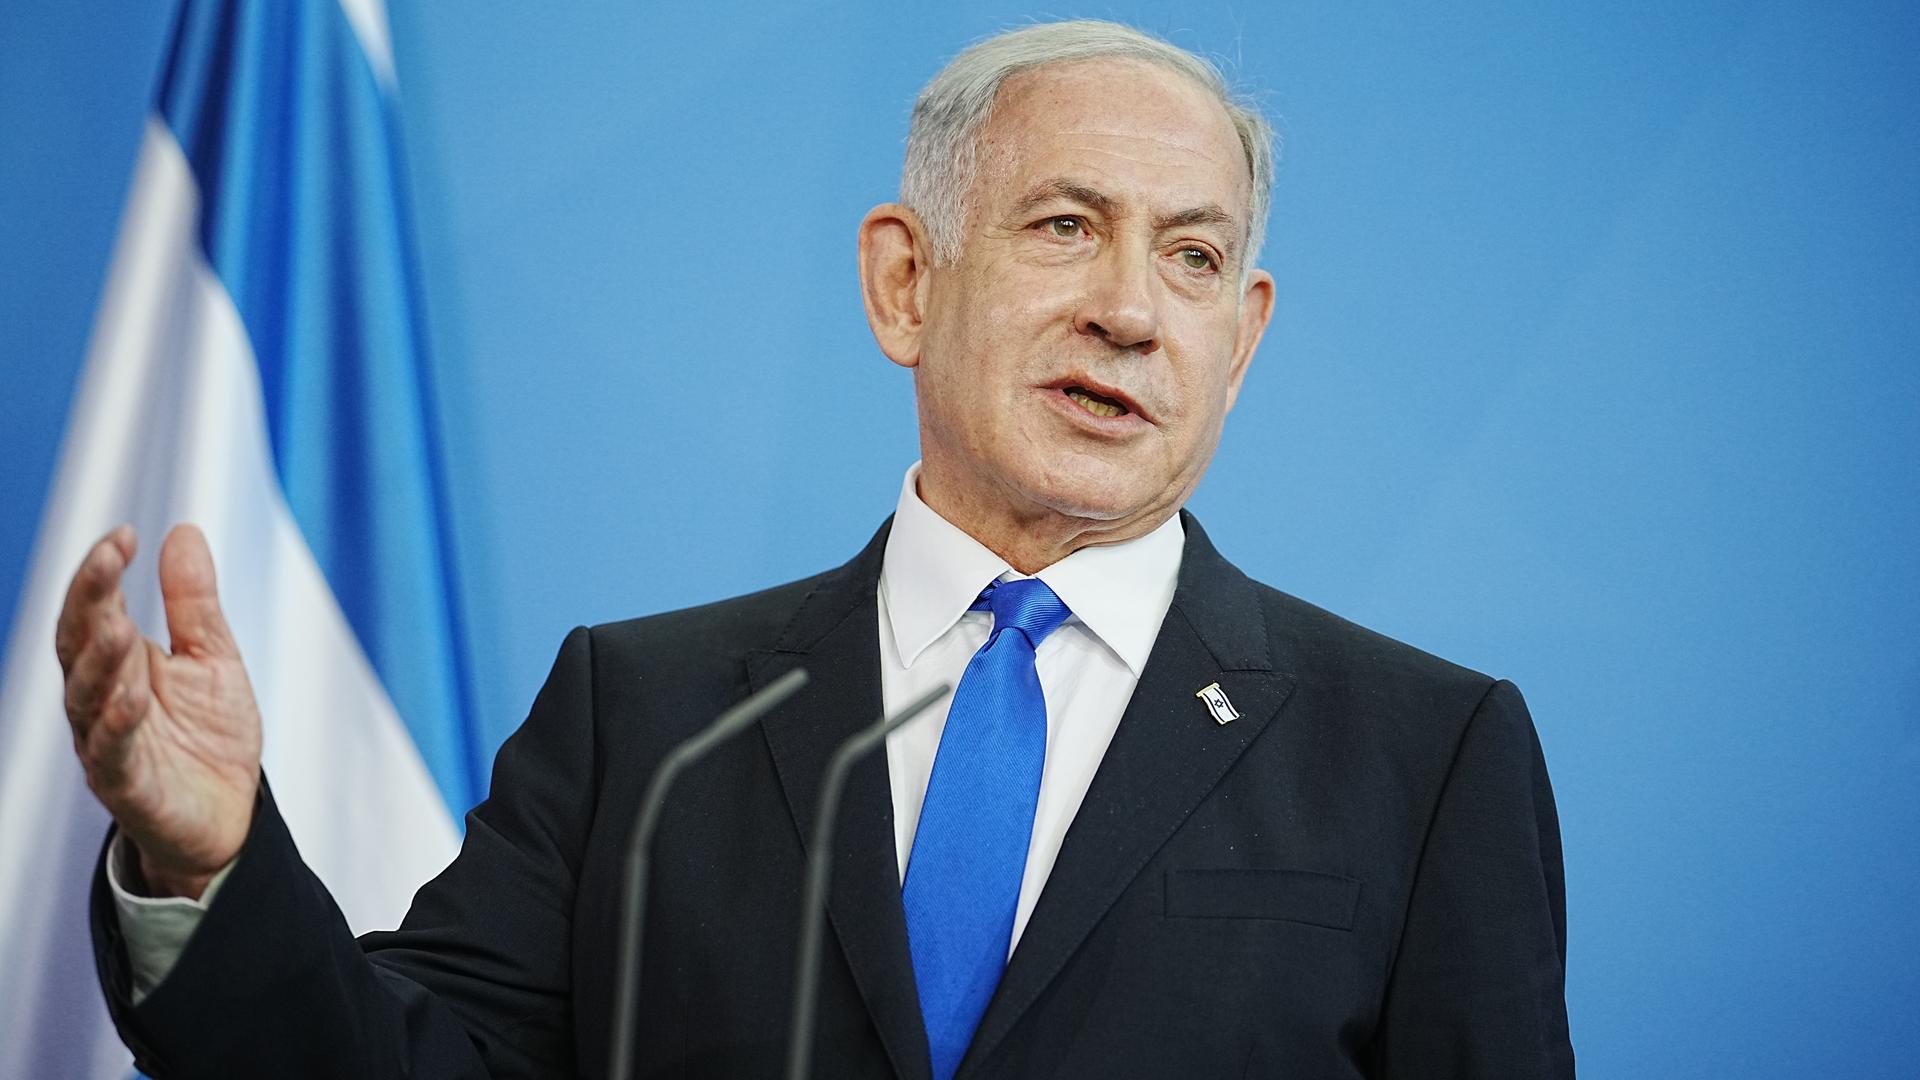 Benjamin Netanjahu, Ministerpräsident von Israel, gibt im Bundeskanzleramt eine Pressekonferenz.